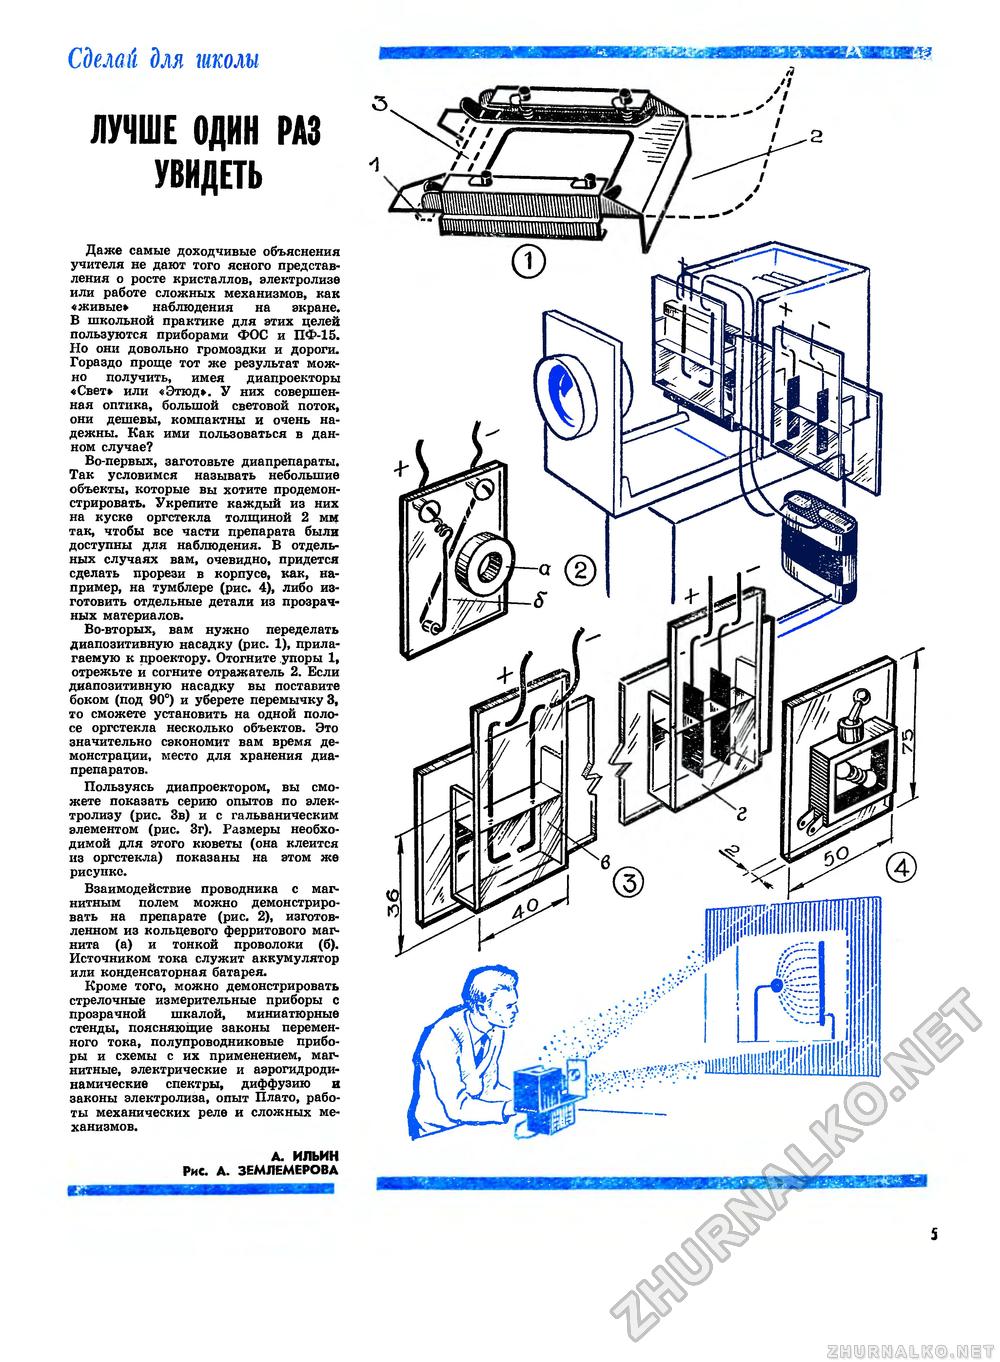 Юный техник - для умелых рук 1977-01, страница 5